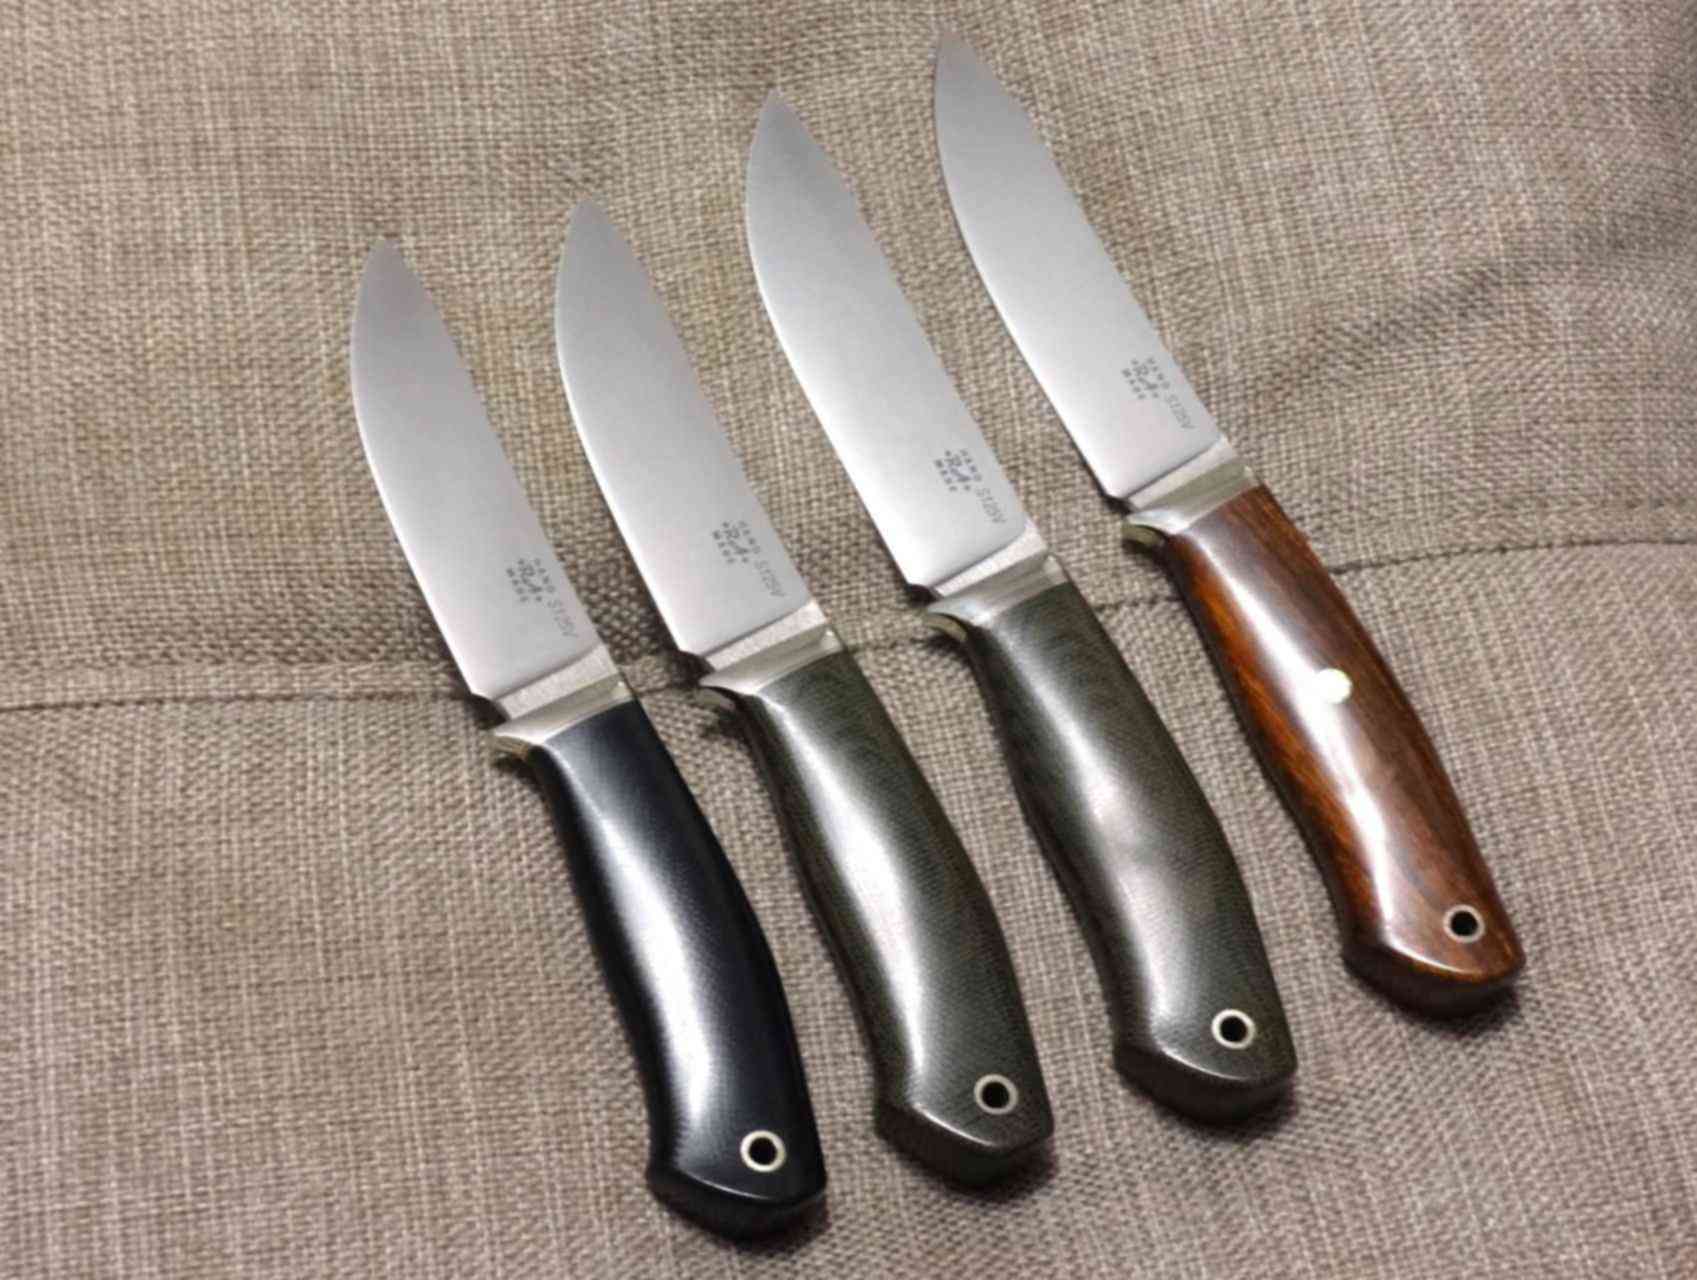 Четверо ножей. Нож CPM s125v. Сталь CPM s125v. Клинок из CPM s125v. Ножи сталь 125 v.